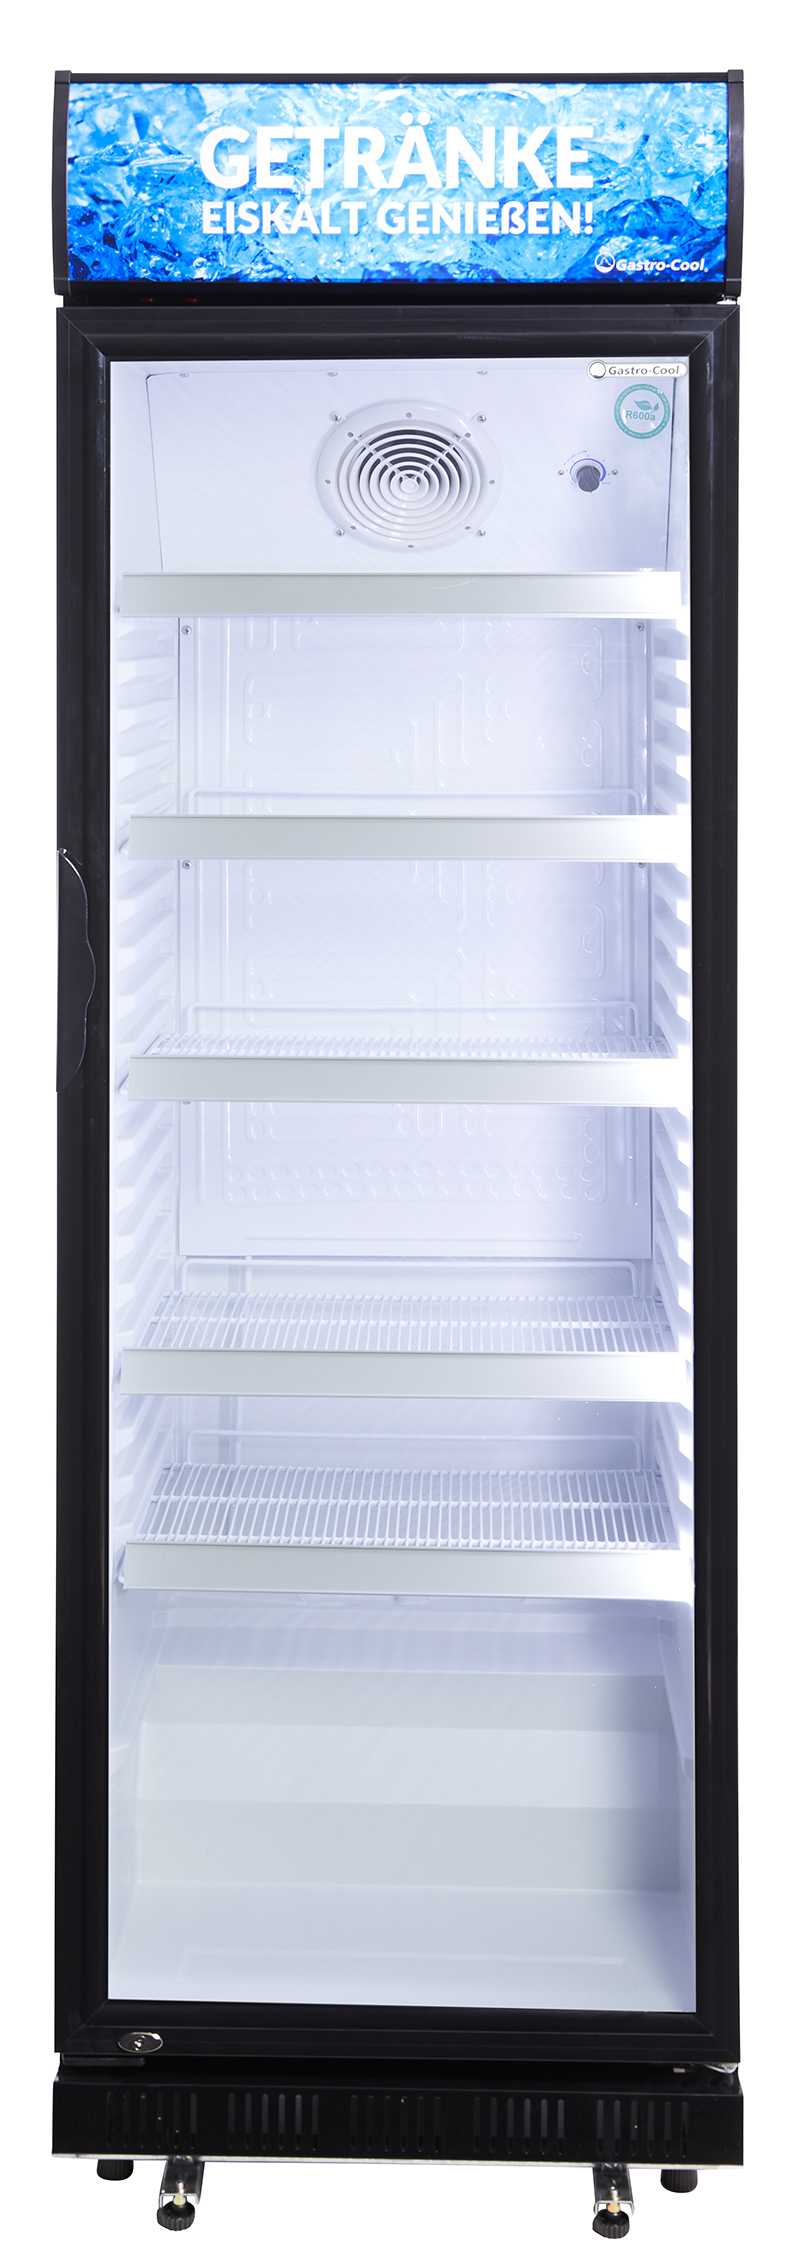 Gastro-Cool - Werbekühlschrank mit Display - schwarz/weiß - GCDC400 - Frontal leer